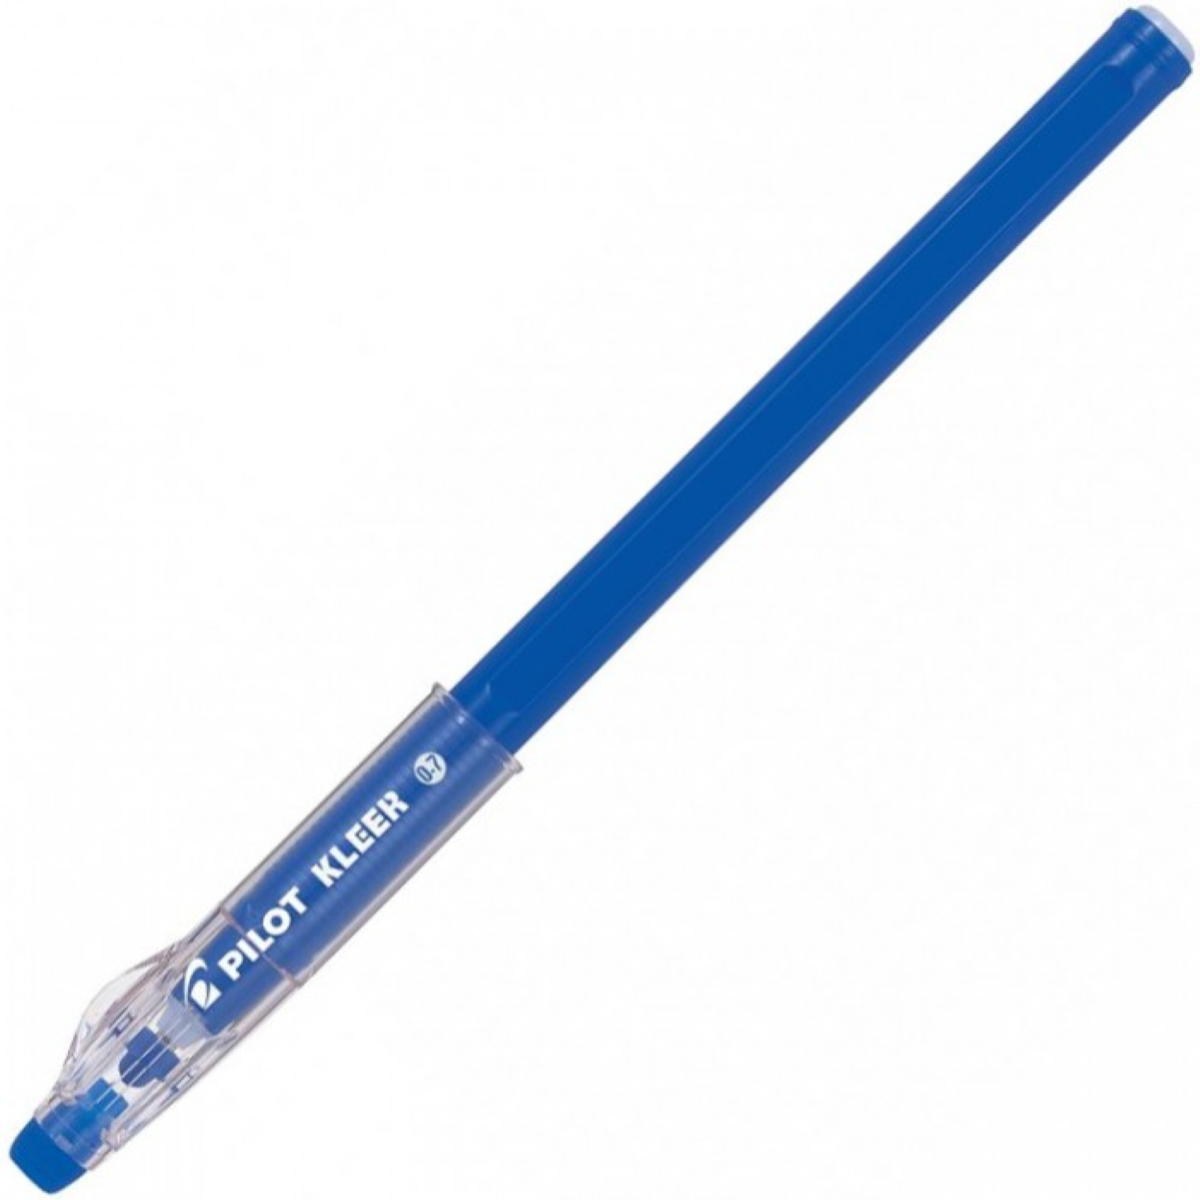 Penna gel con cappuccio cancellabile Rewtriter - tratto fine - colore blu